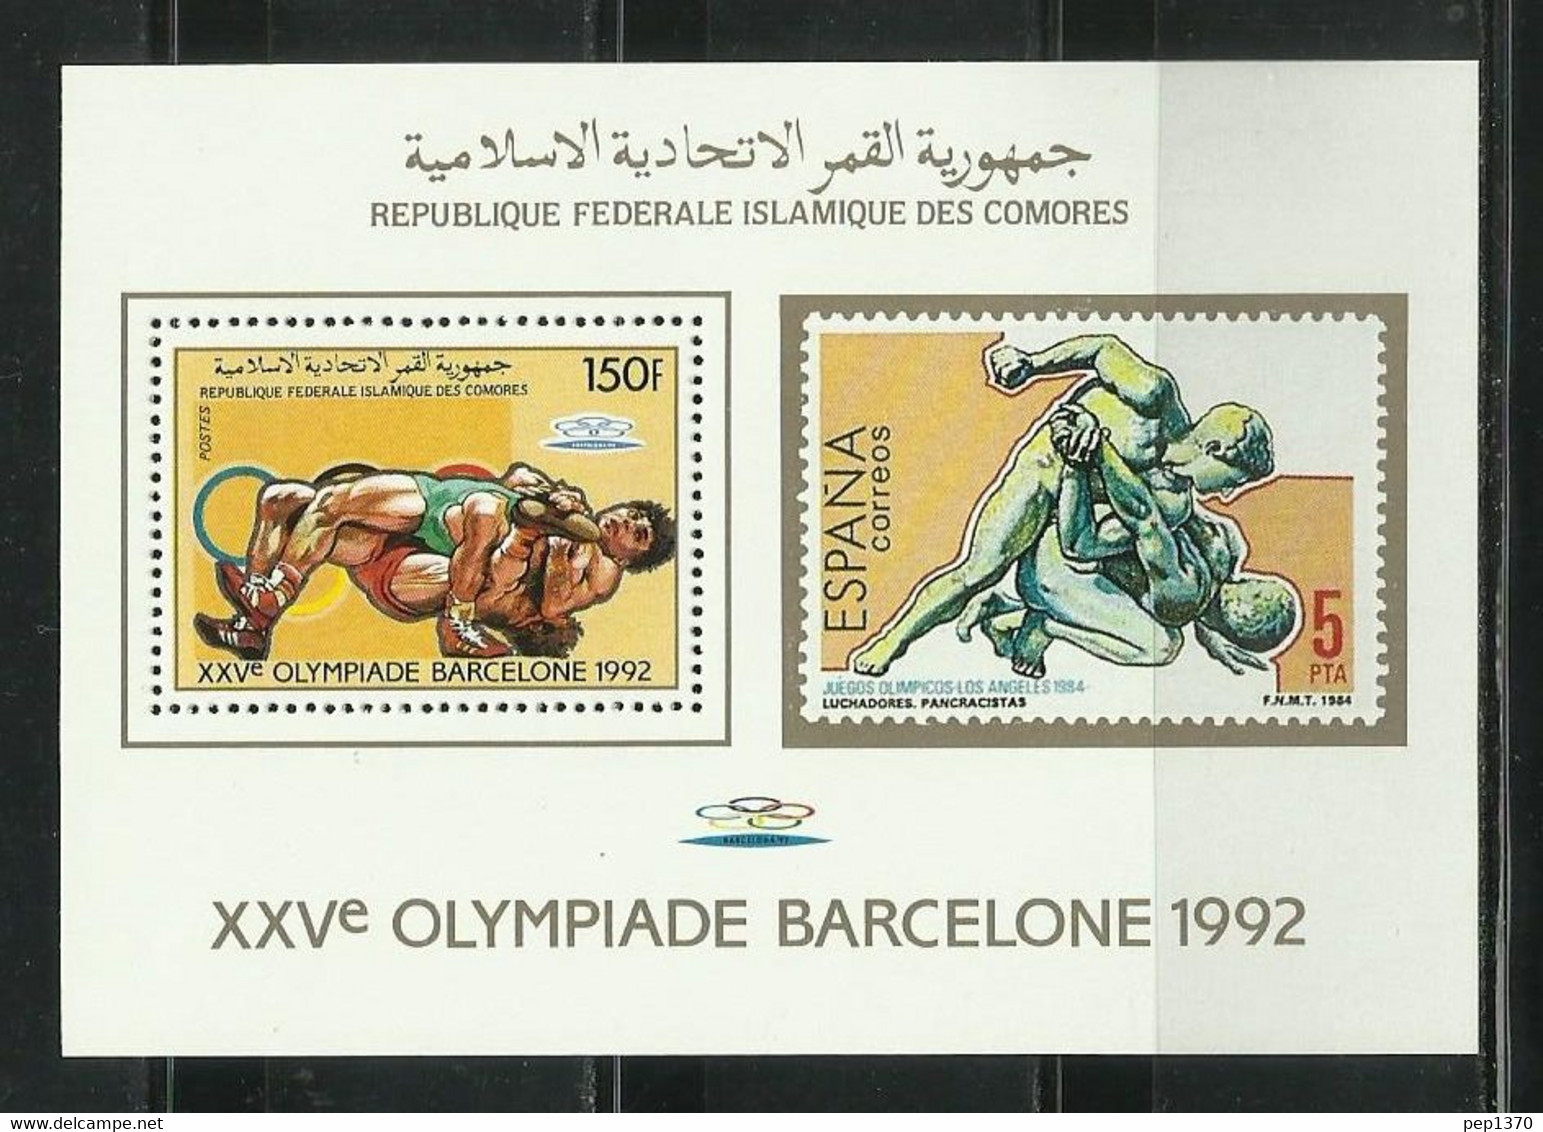 COMORES 1987 - OLYMPICS BARCELONA 92 - LUCHA - BF CON SELLO RECORDATORIO - Comores (1975-...)